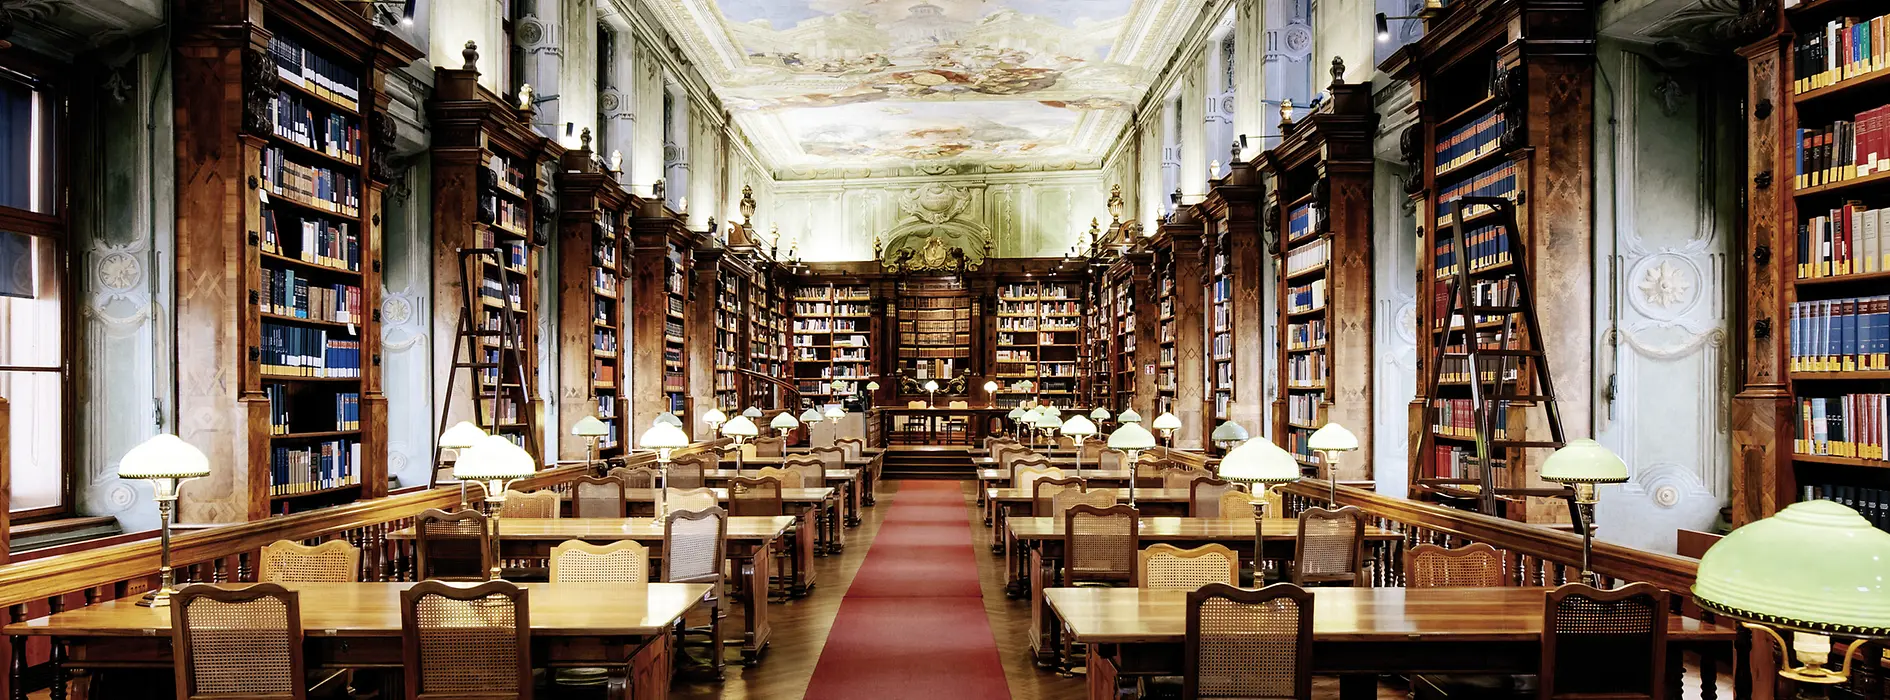 Salle de lecture de la Bibliothèque nationale